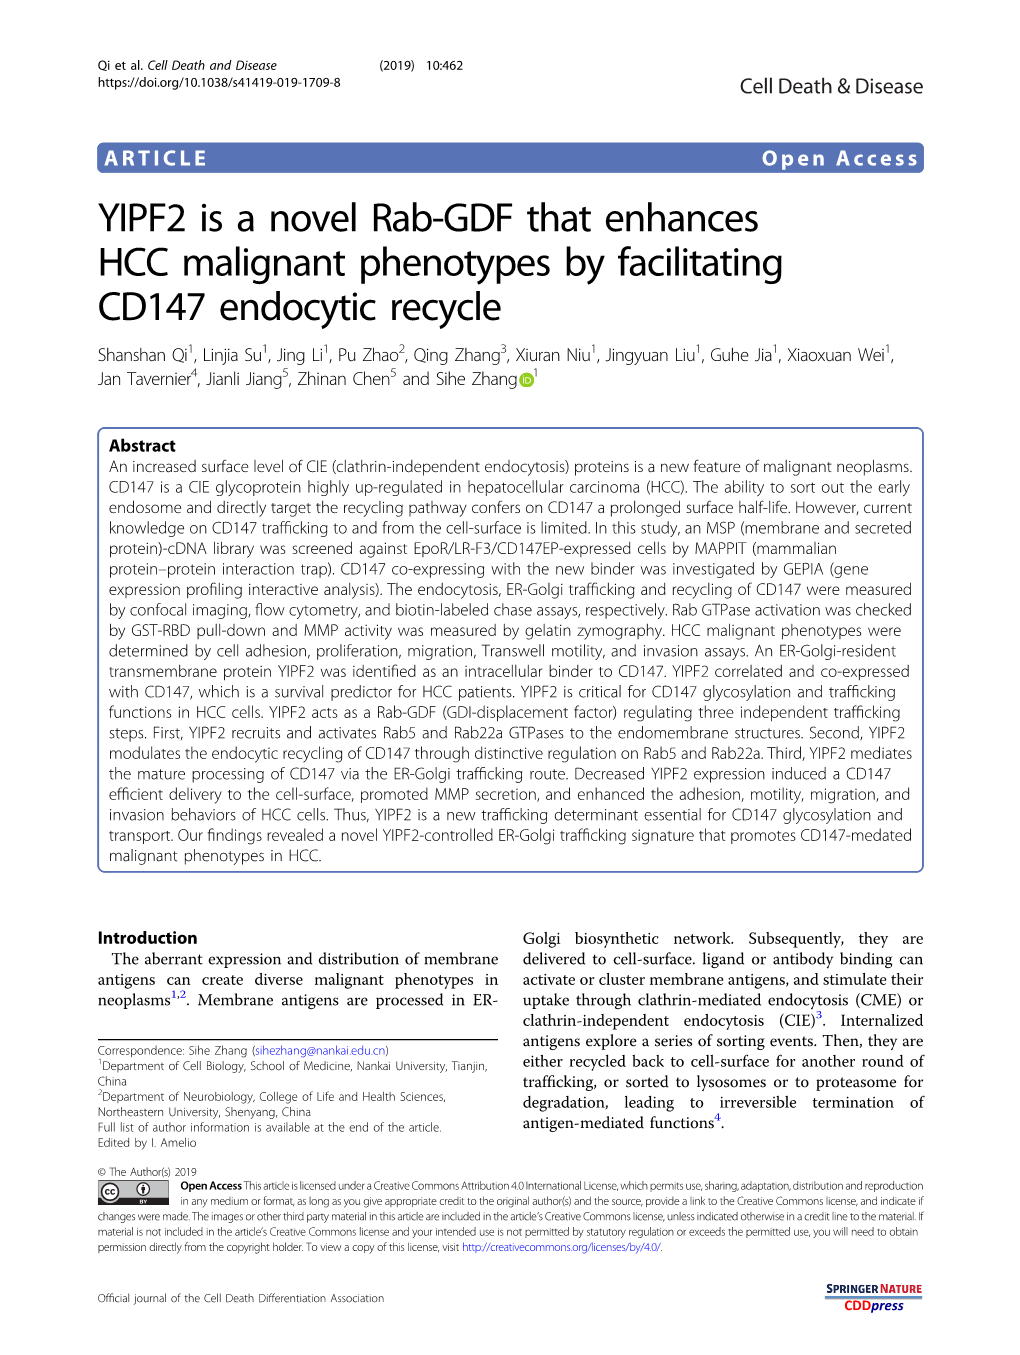 YIPF2 Is a Novel Rab-GDF That Enhances HCC Malignant